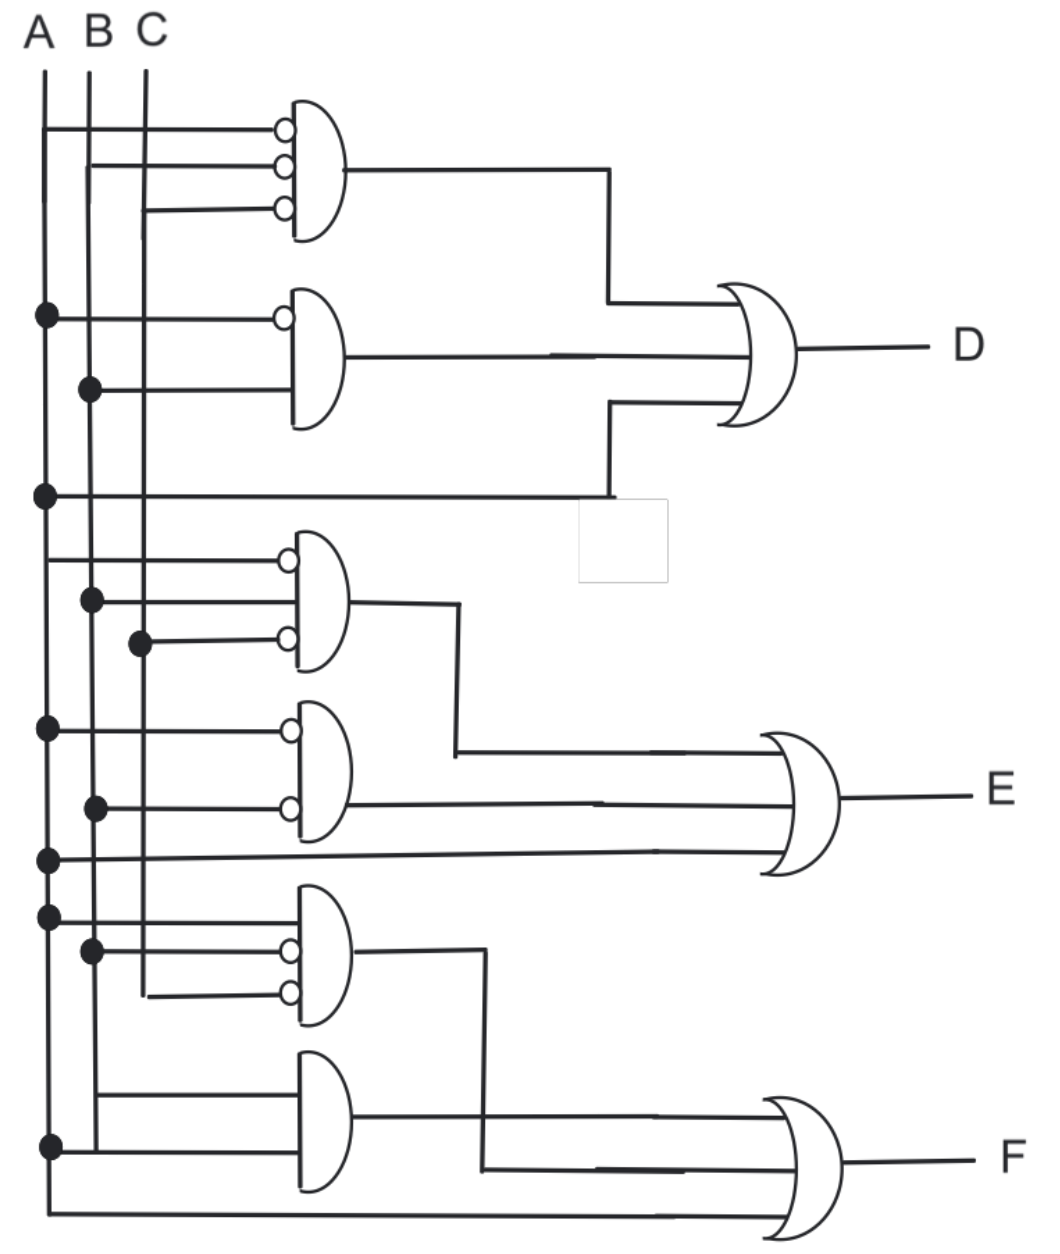 'Complex' Circuit Diagram